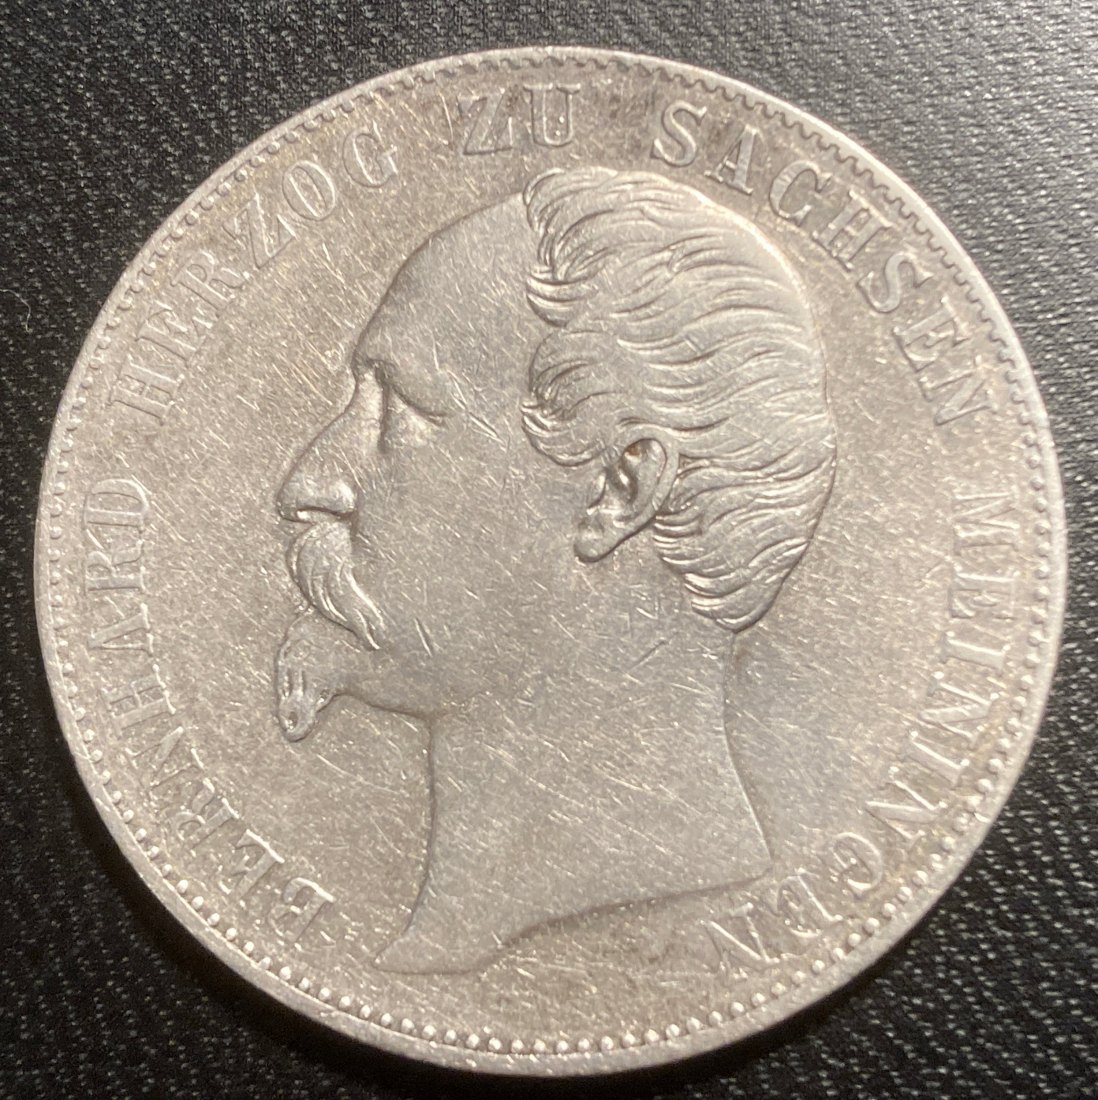  Altdeutschland - 1 Taler 1866 Sachsen Meiningen - Silbermünze   